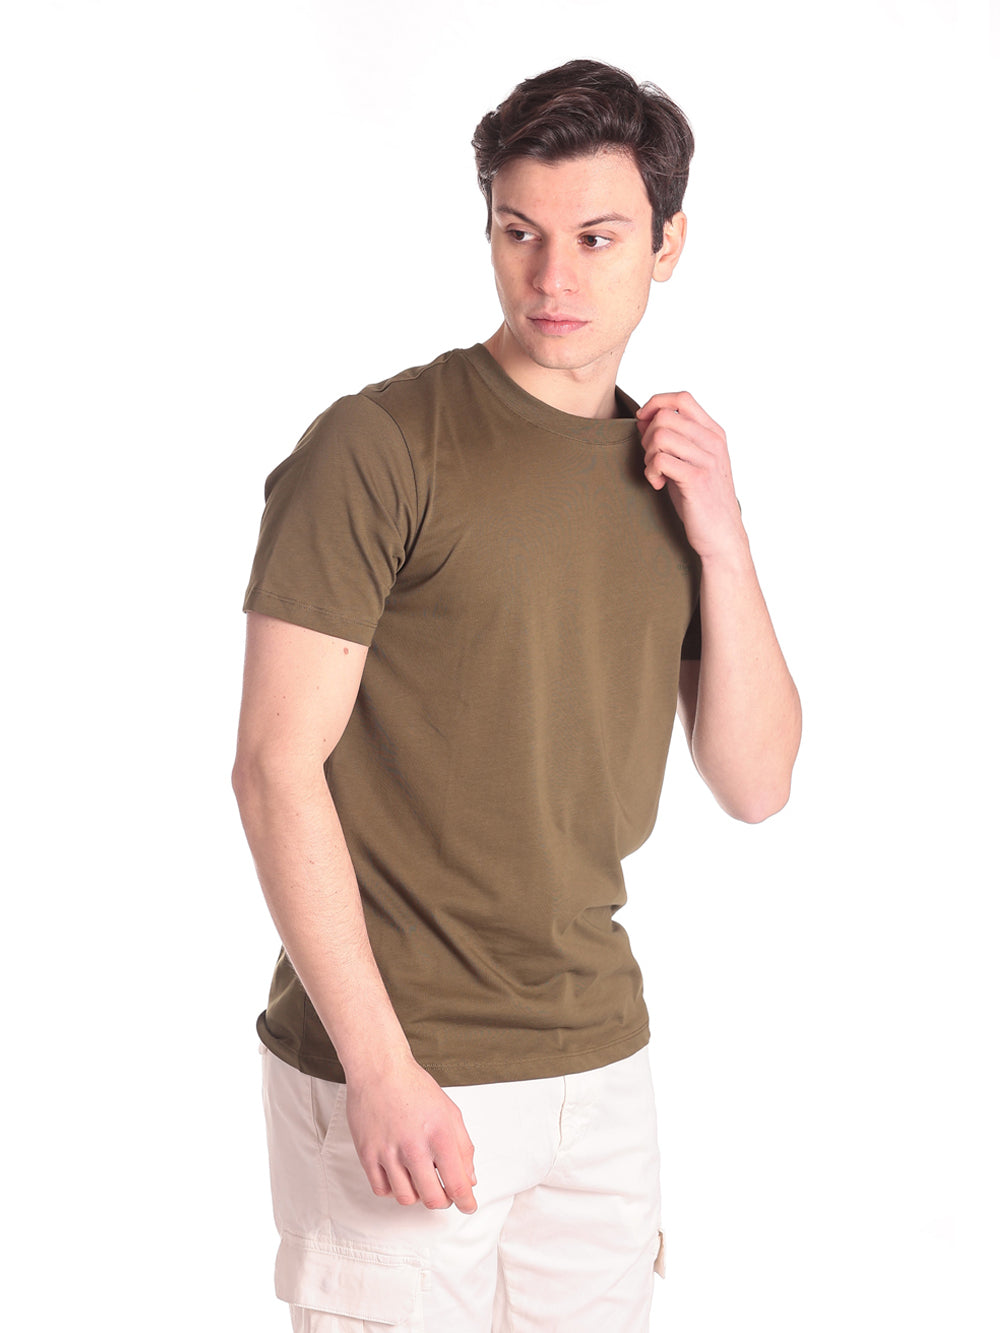 Liu Jo T-Shirt M123p204flamepocket Military Green